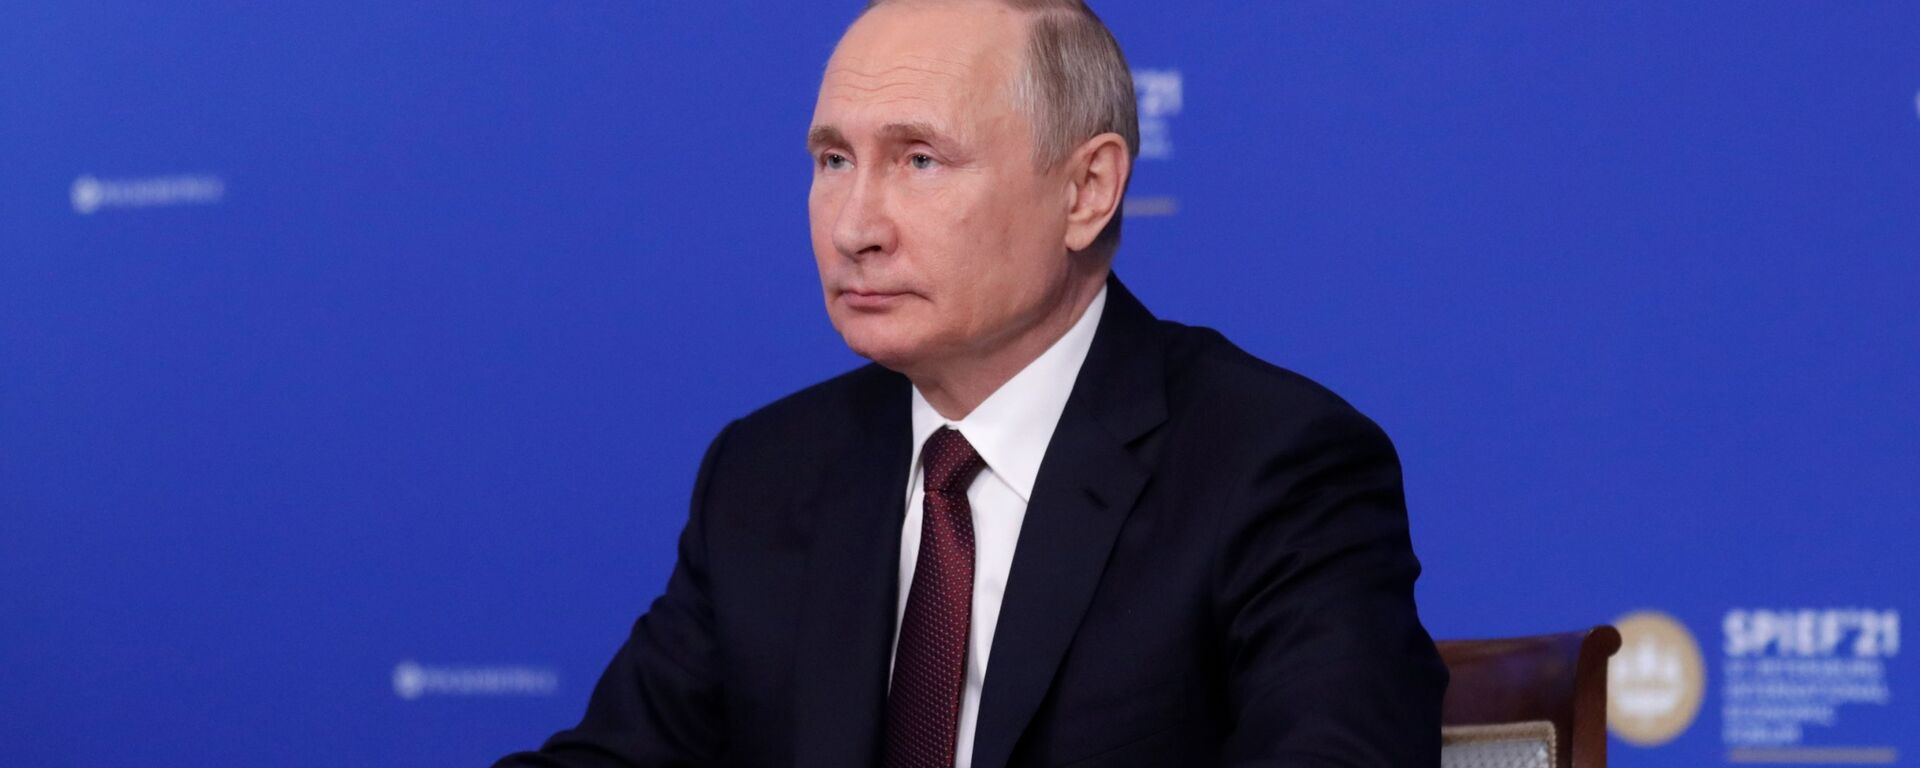 الرئيس الروسي فلاديمير بوتين خلال المنتدى الاقتصادي الدولي سانت بطرسبورغ 2021 - سبوتنيك عربي, 1920, 04.06.2021